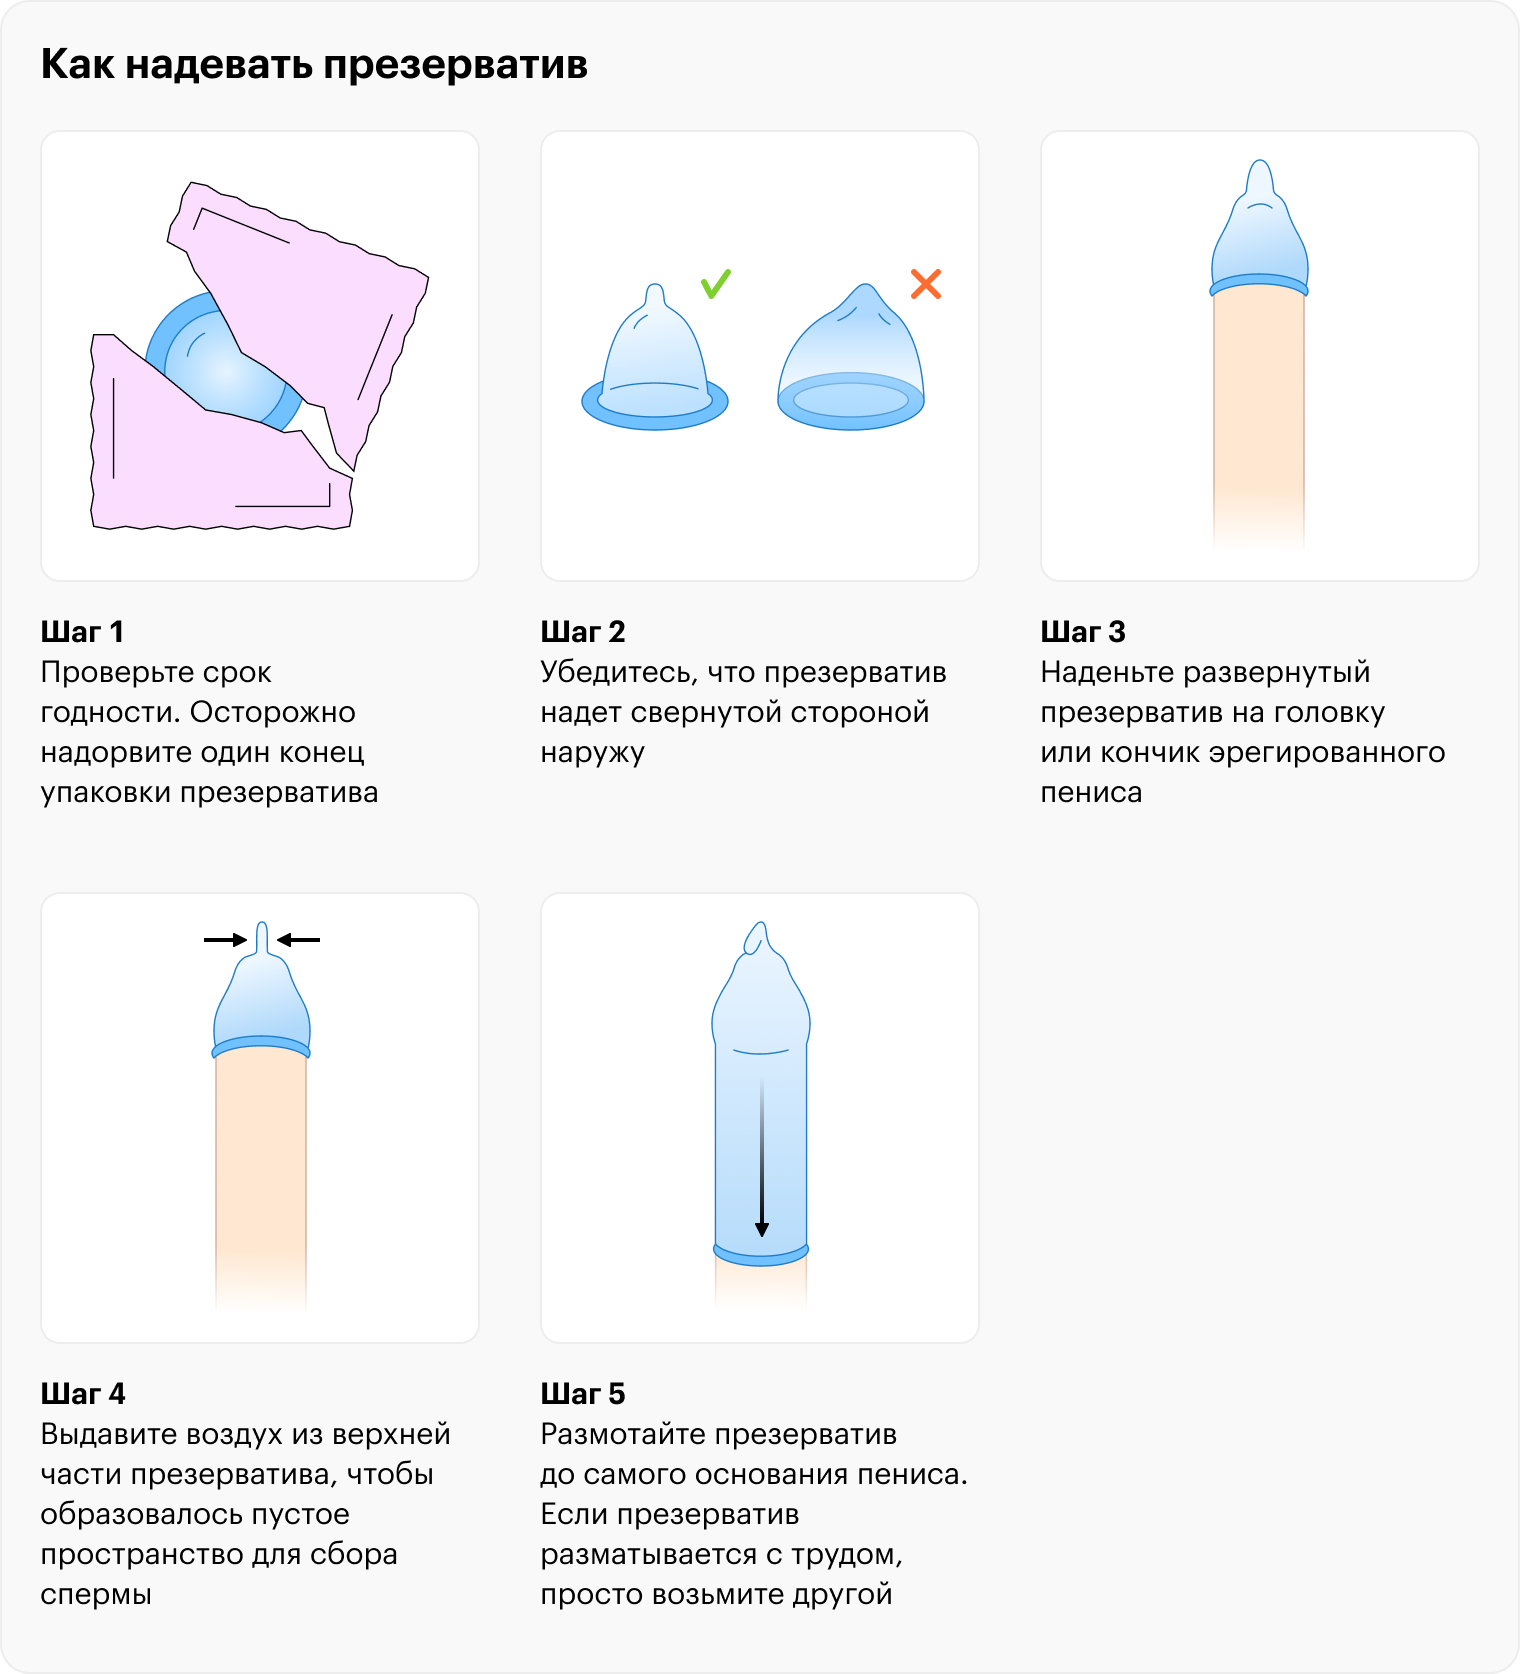 Как правильно и быстро надеть презерватив руками?